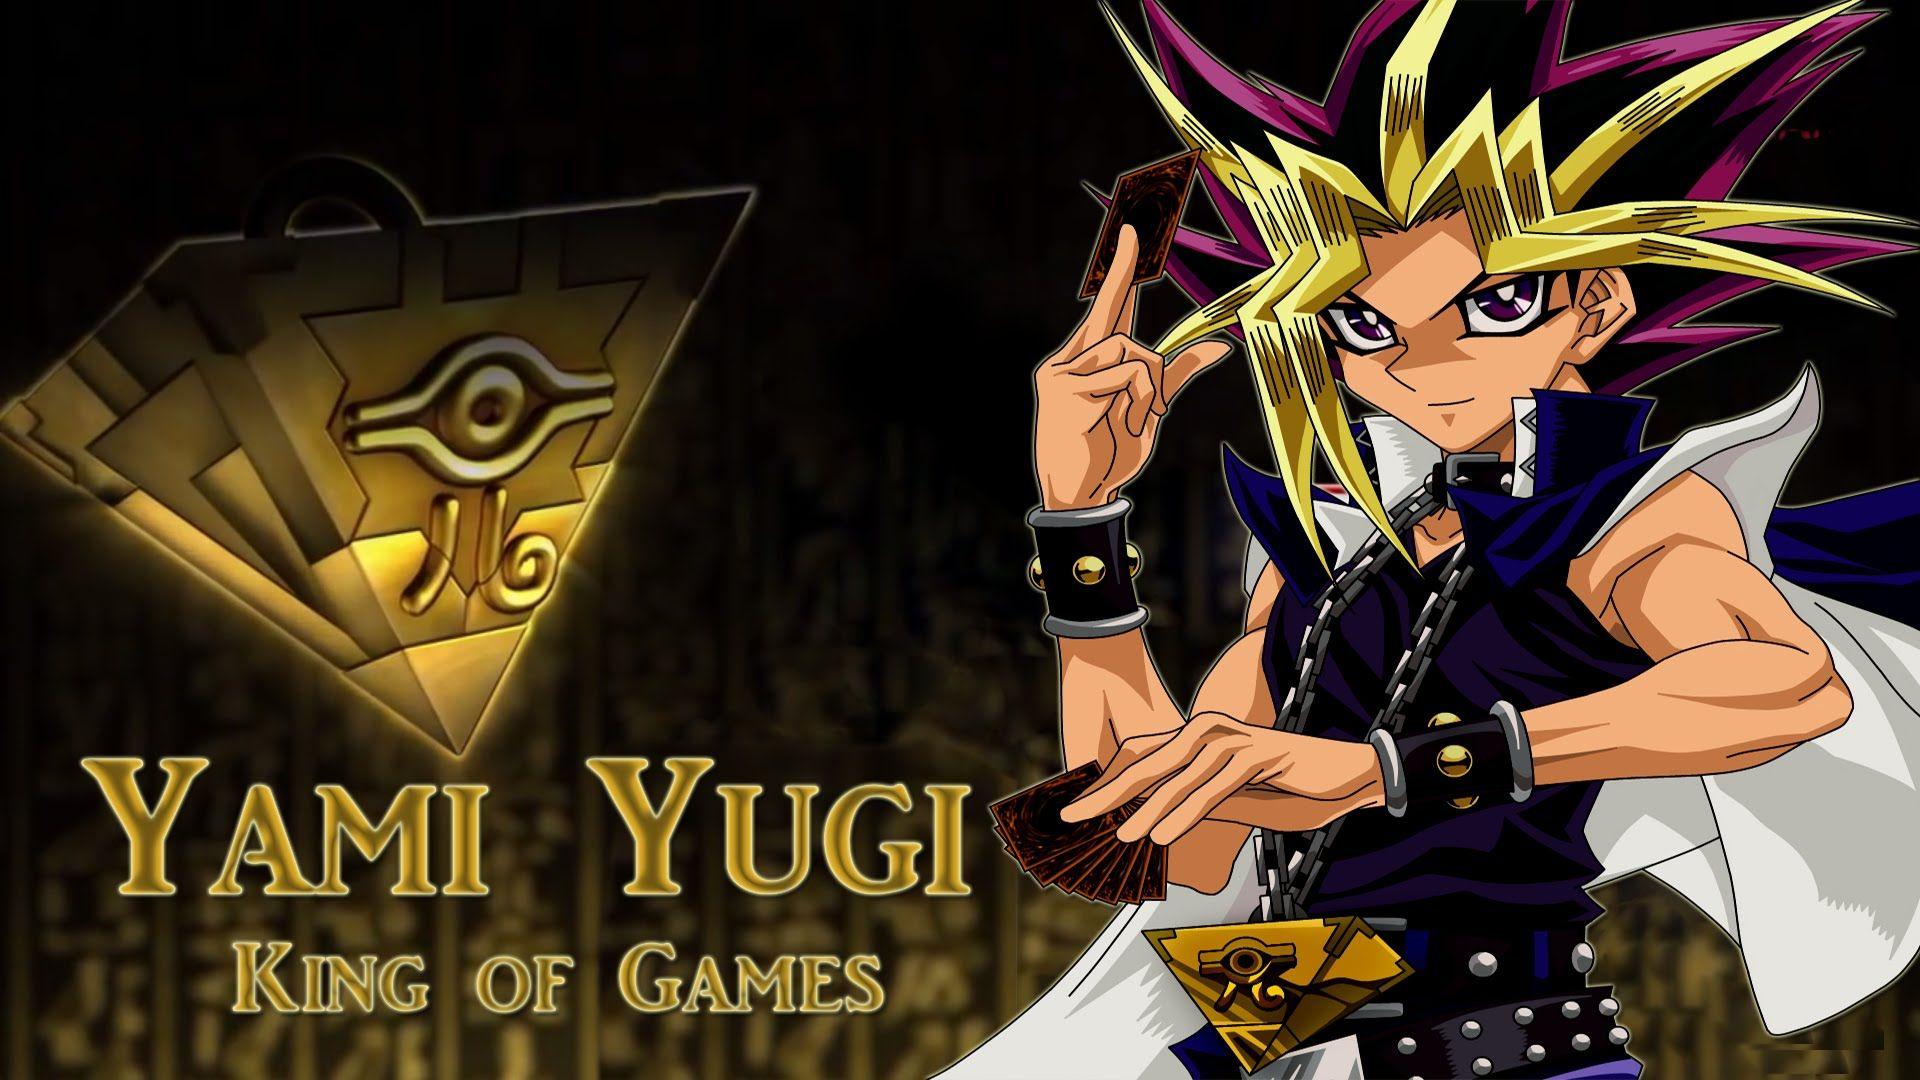 Yu Gi Oh!. Pack. Wallpaper Anime. Full HD Link. Mega